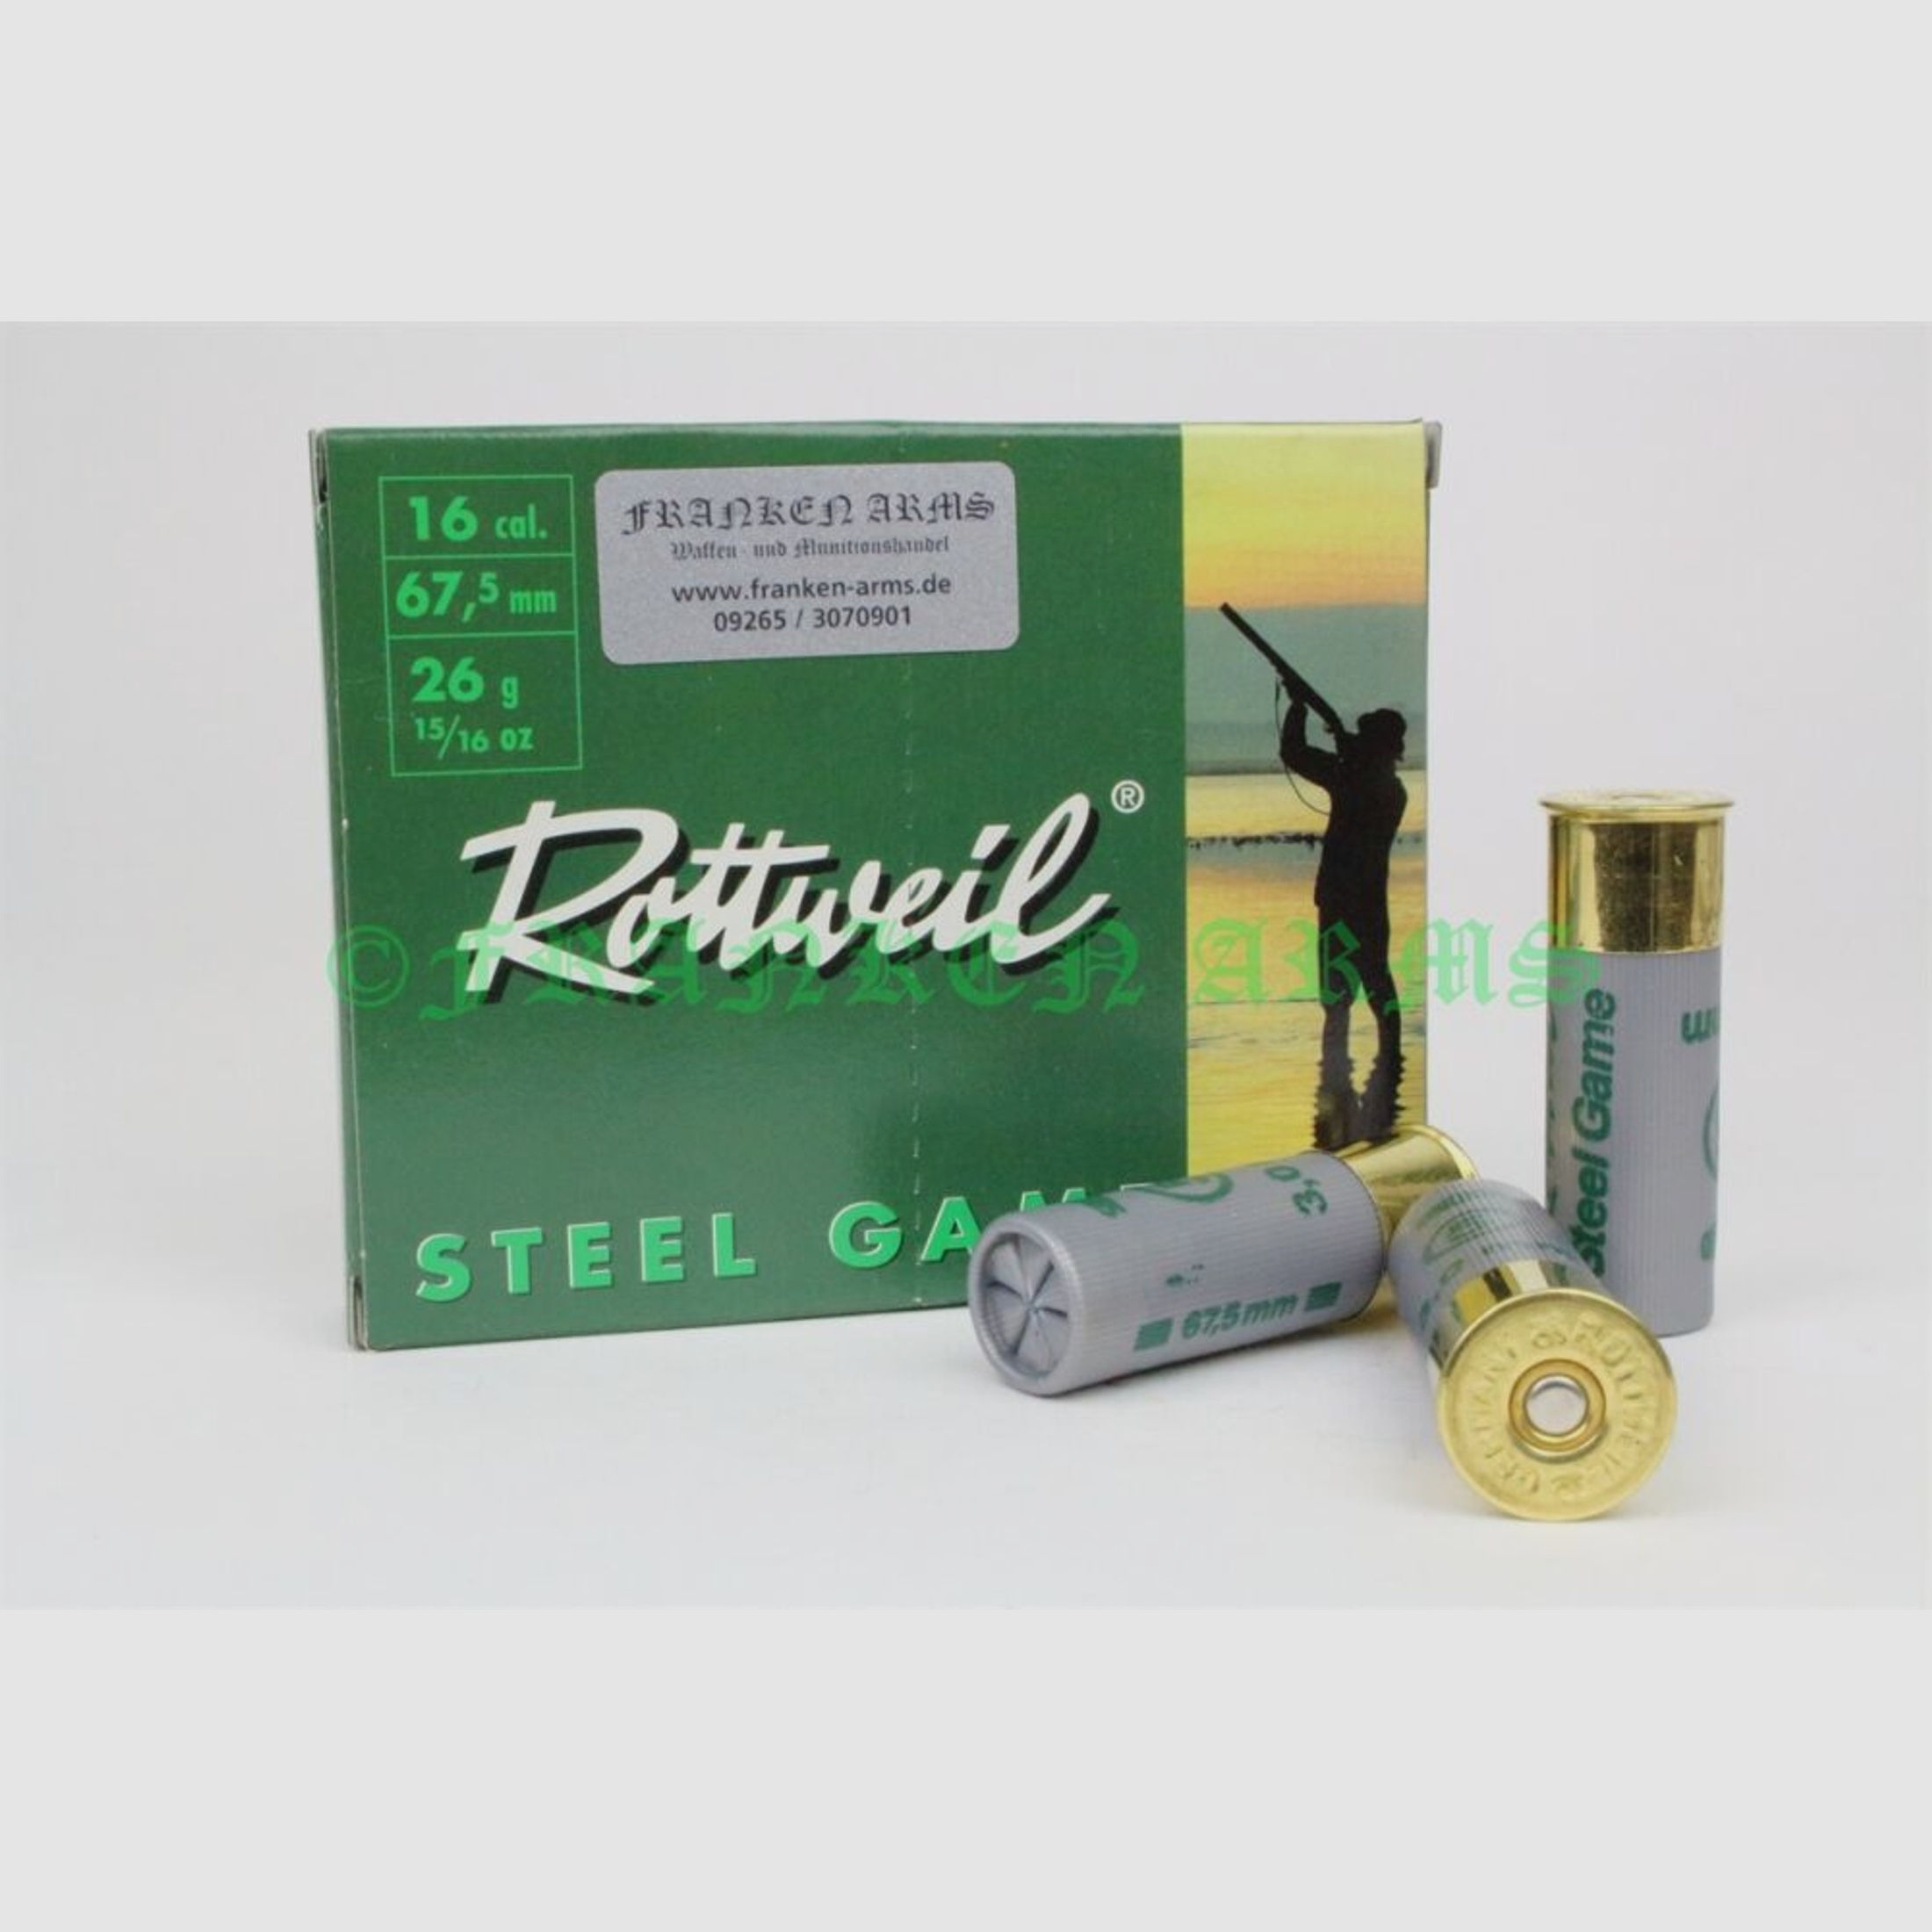 Rottweil	 STEEL GAME 16/67,5 3,0mm 26g 10Stück Staffelpreise